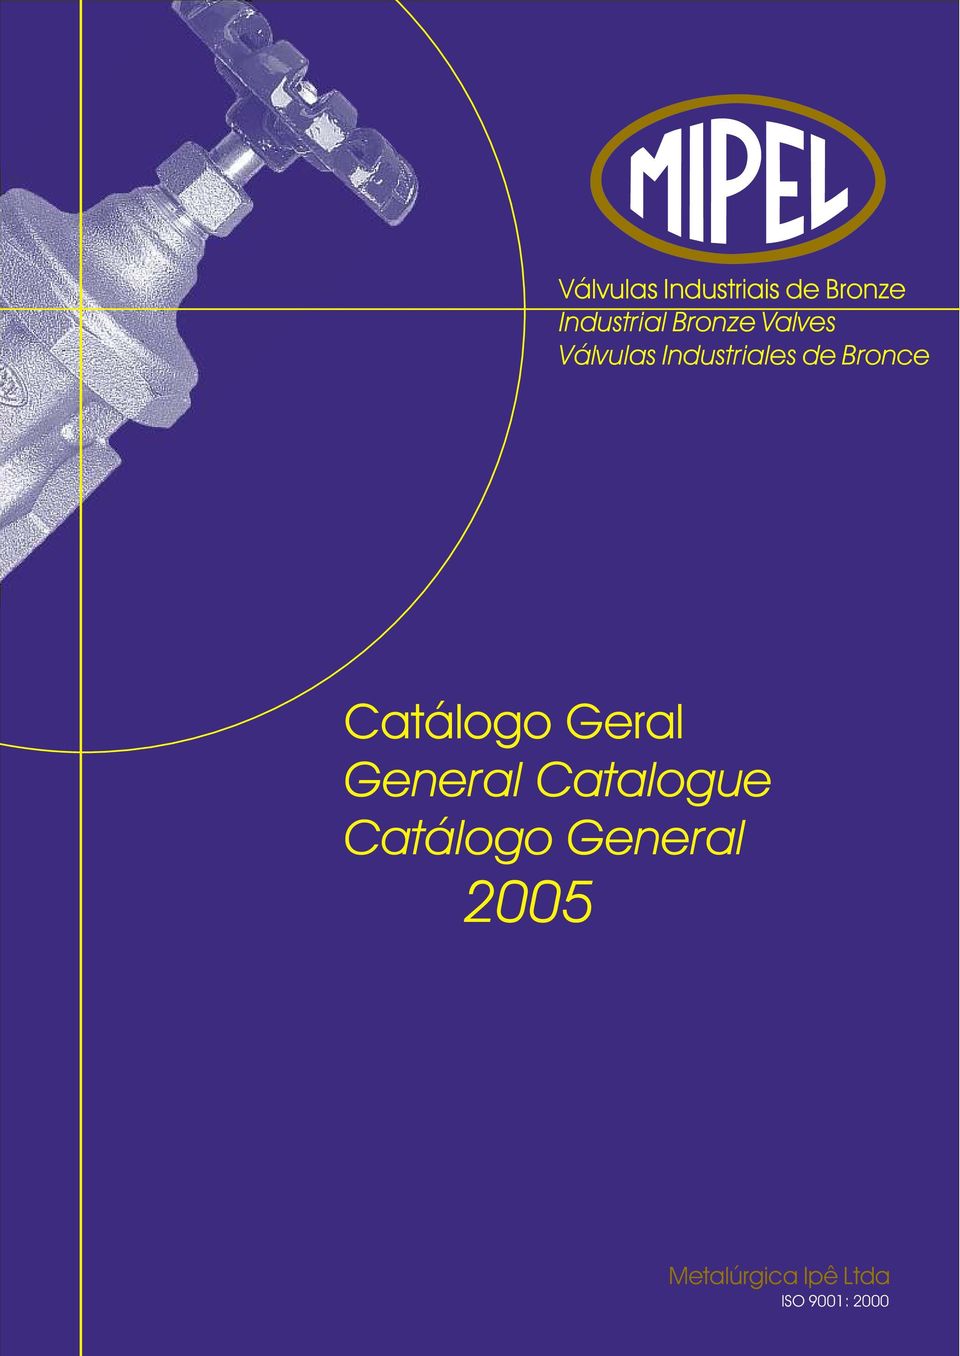 Válvulas Industriales de Catálogo Geral General